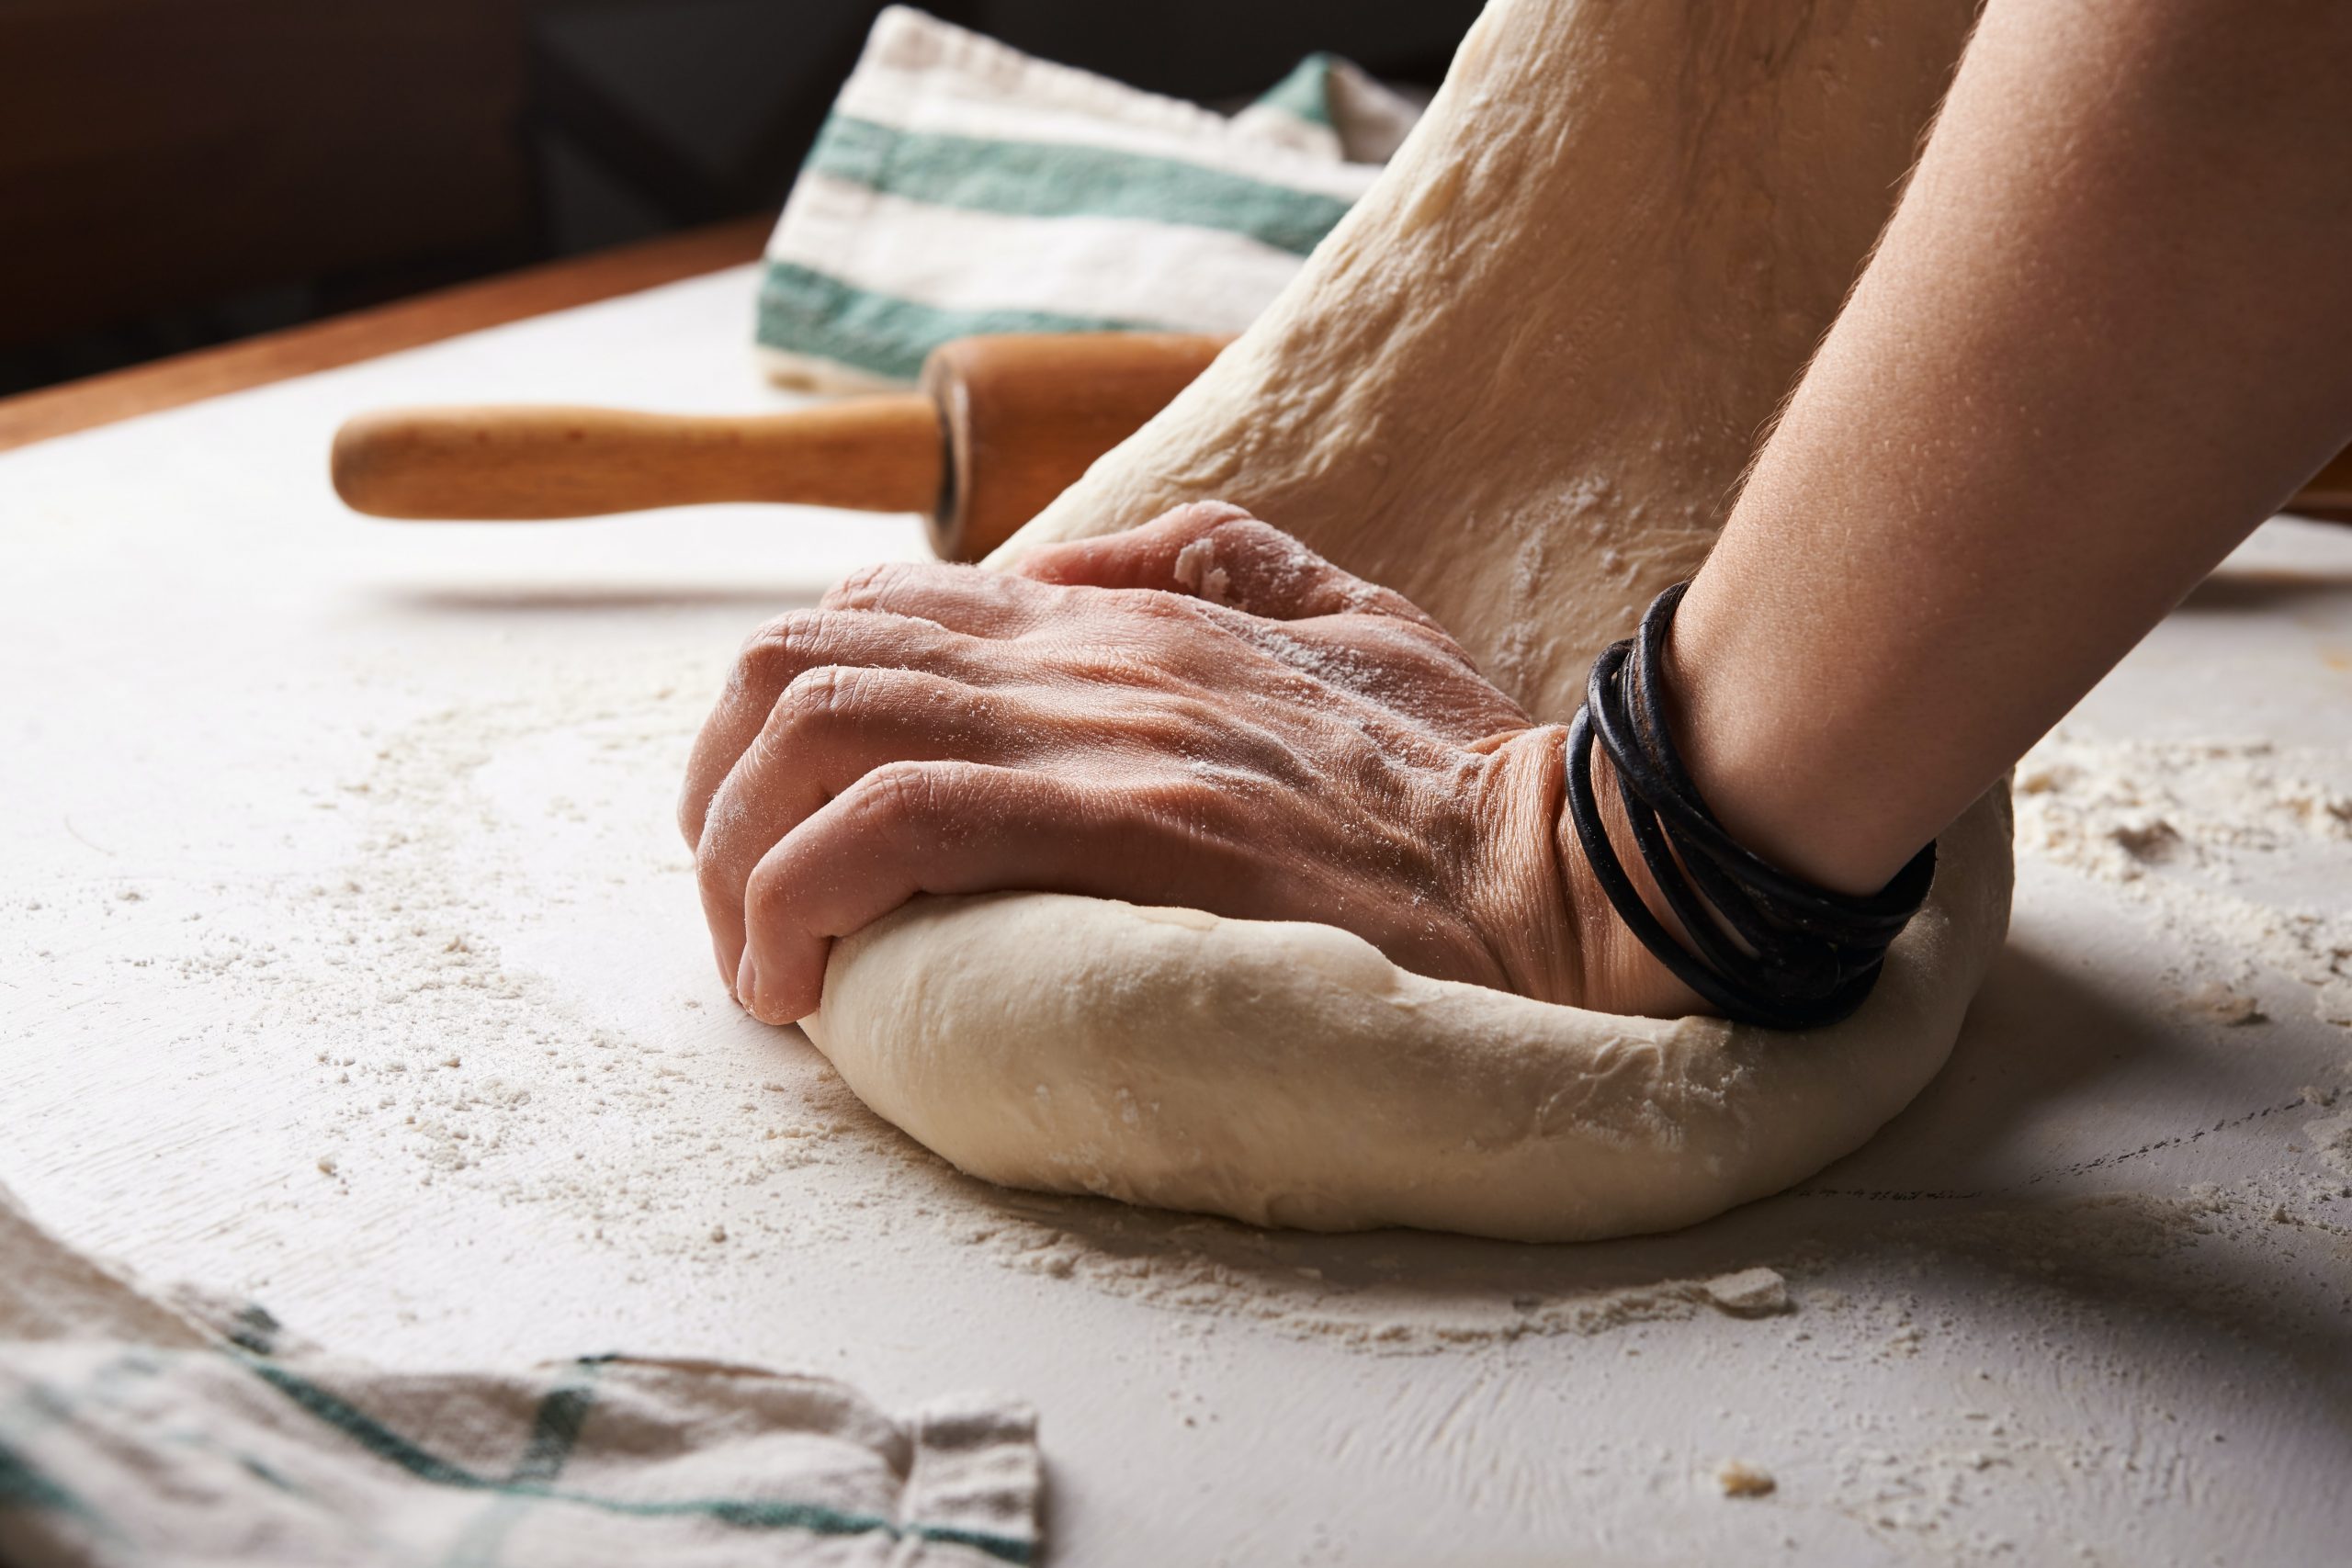 Tips For Making Homemade Bread